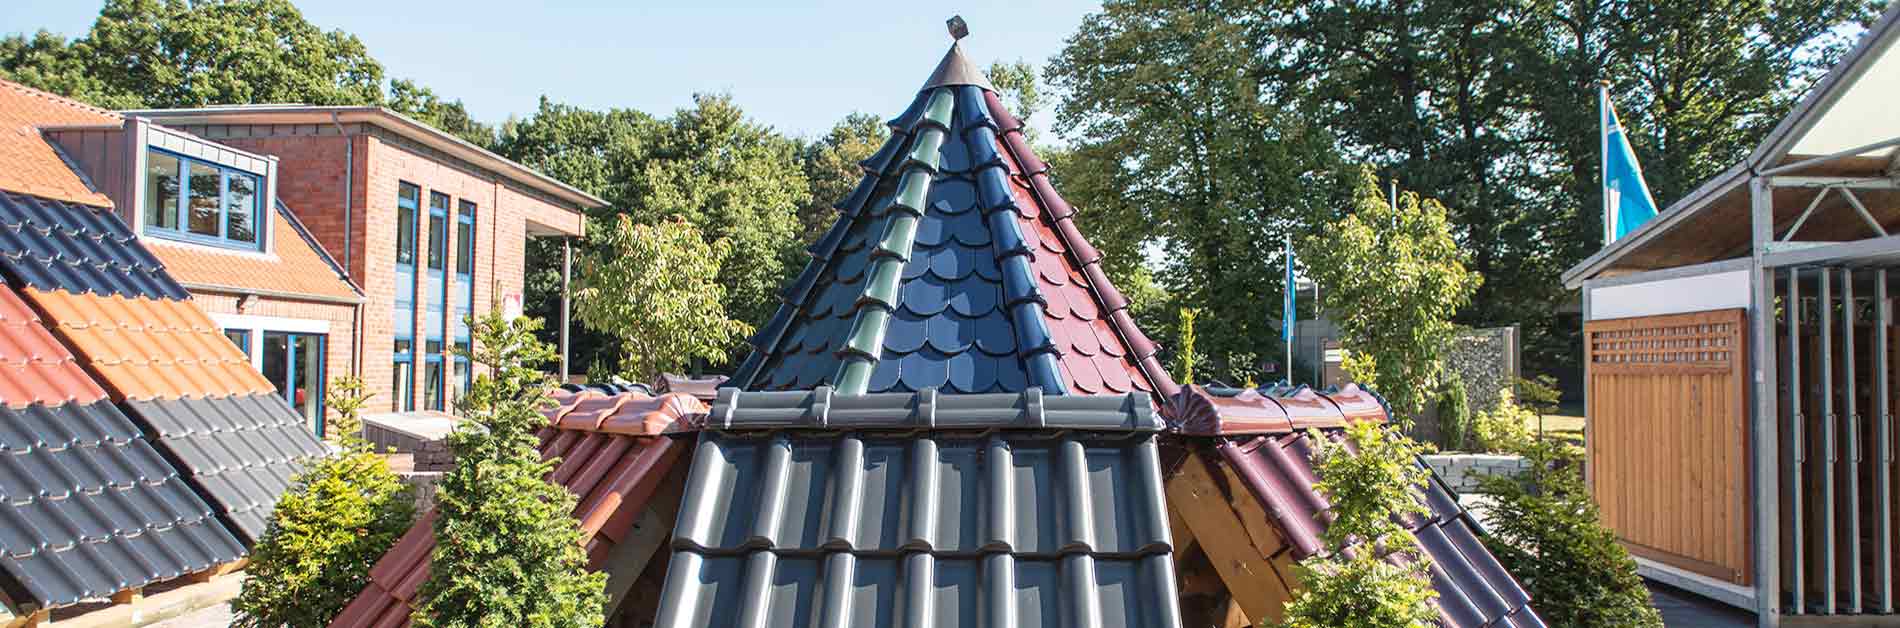 Dachziegel kaufen bei Cassens in Oldenburg und Rastede